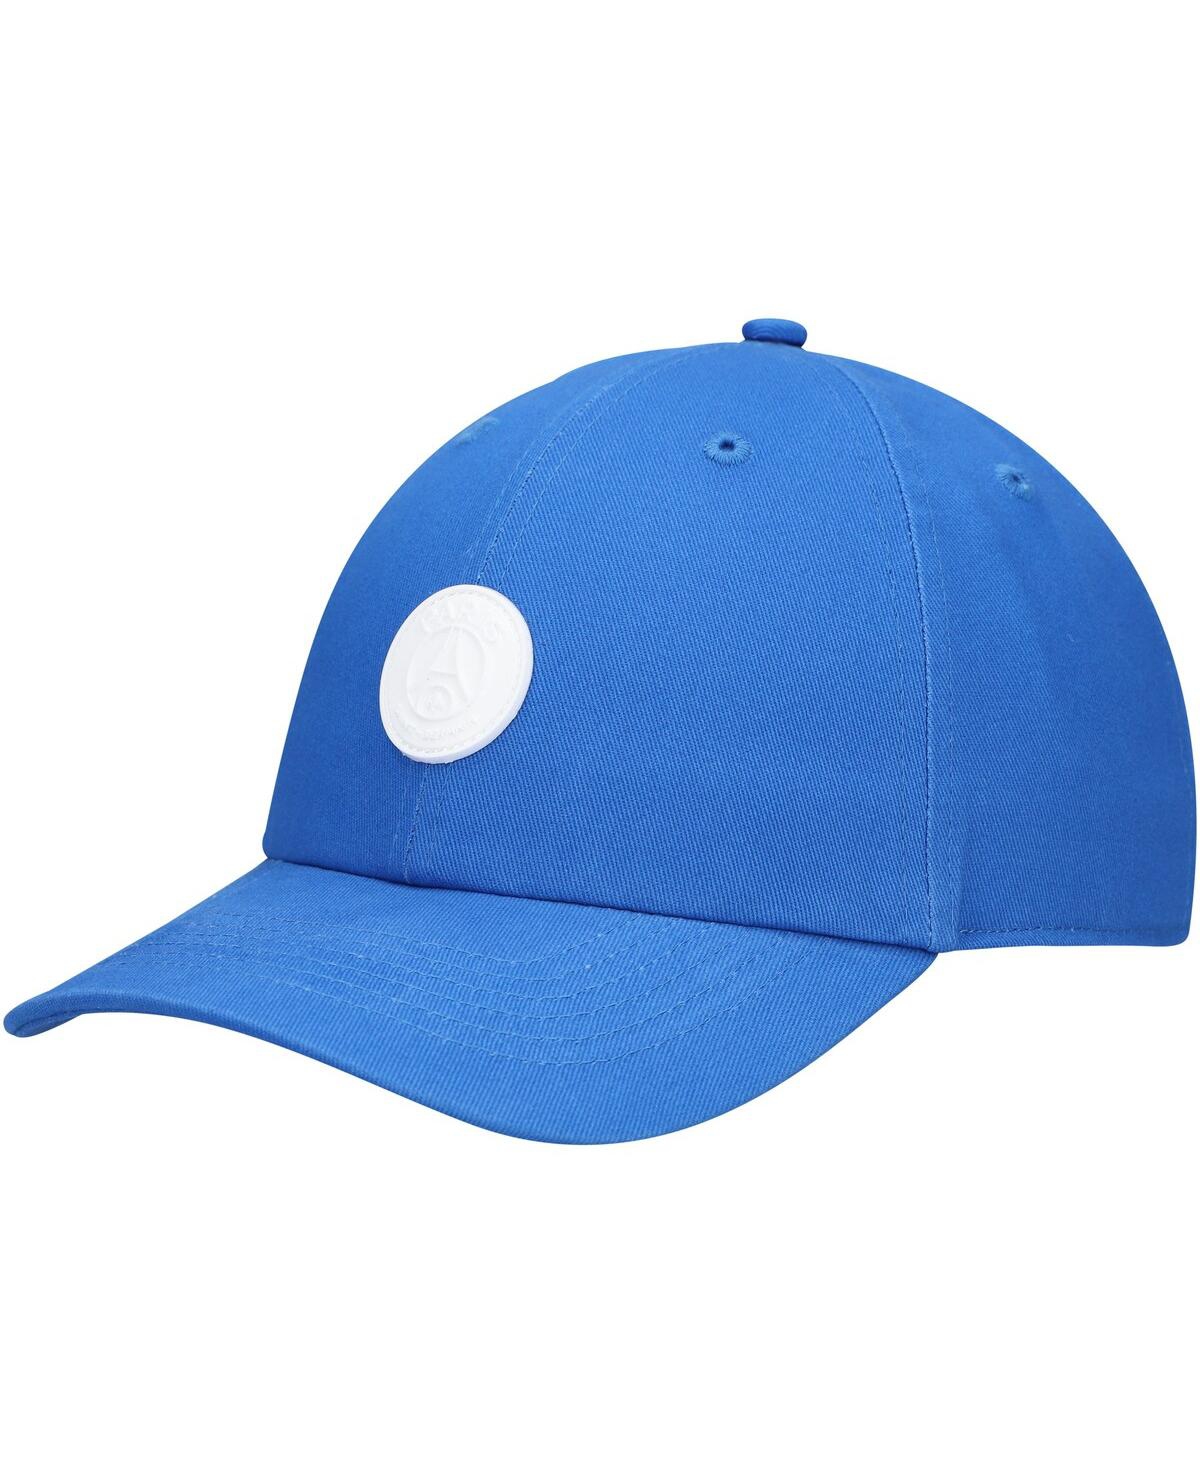 Men's Blue Paris Saint-Germain Casuals Adjustable Hat - Blue